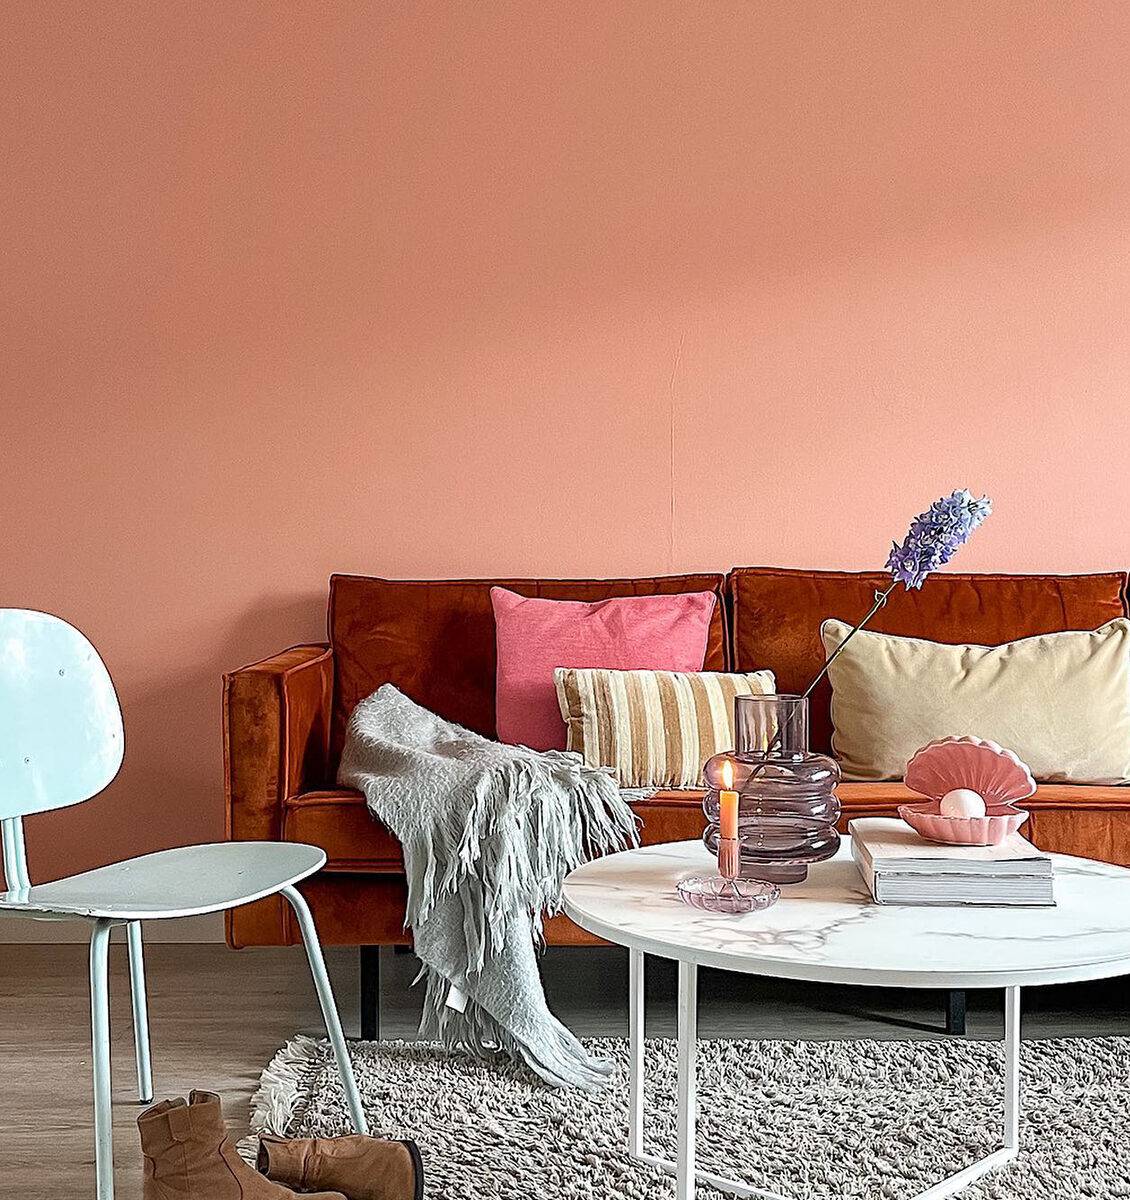 NL lege zacht roze muur in woonkamer boven bank